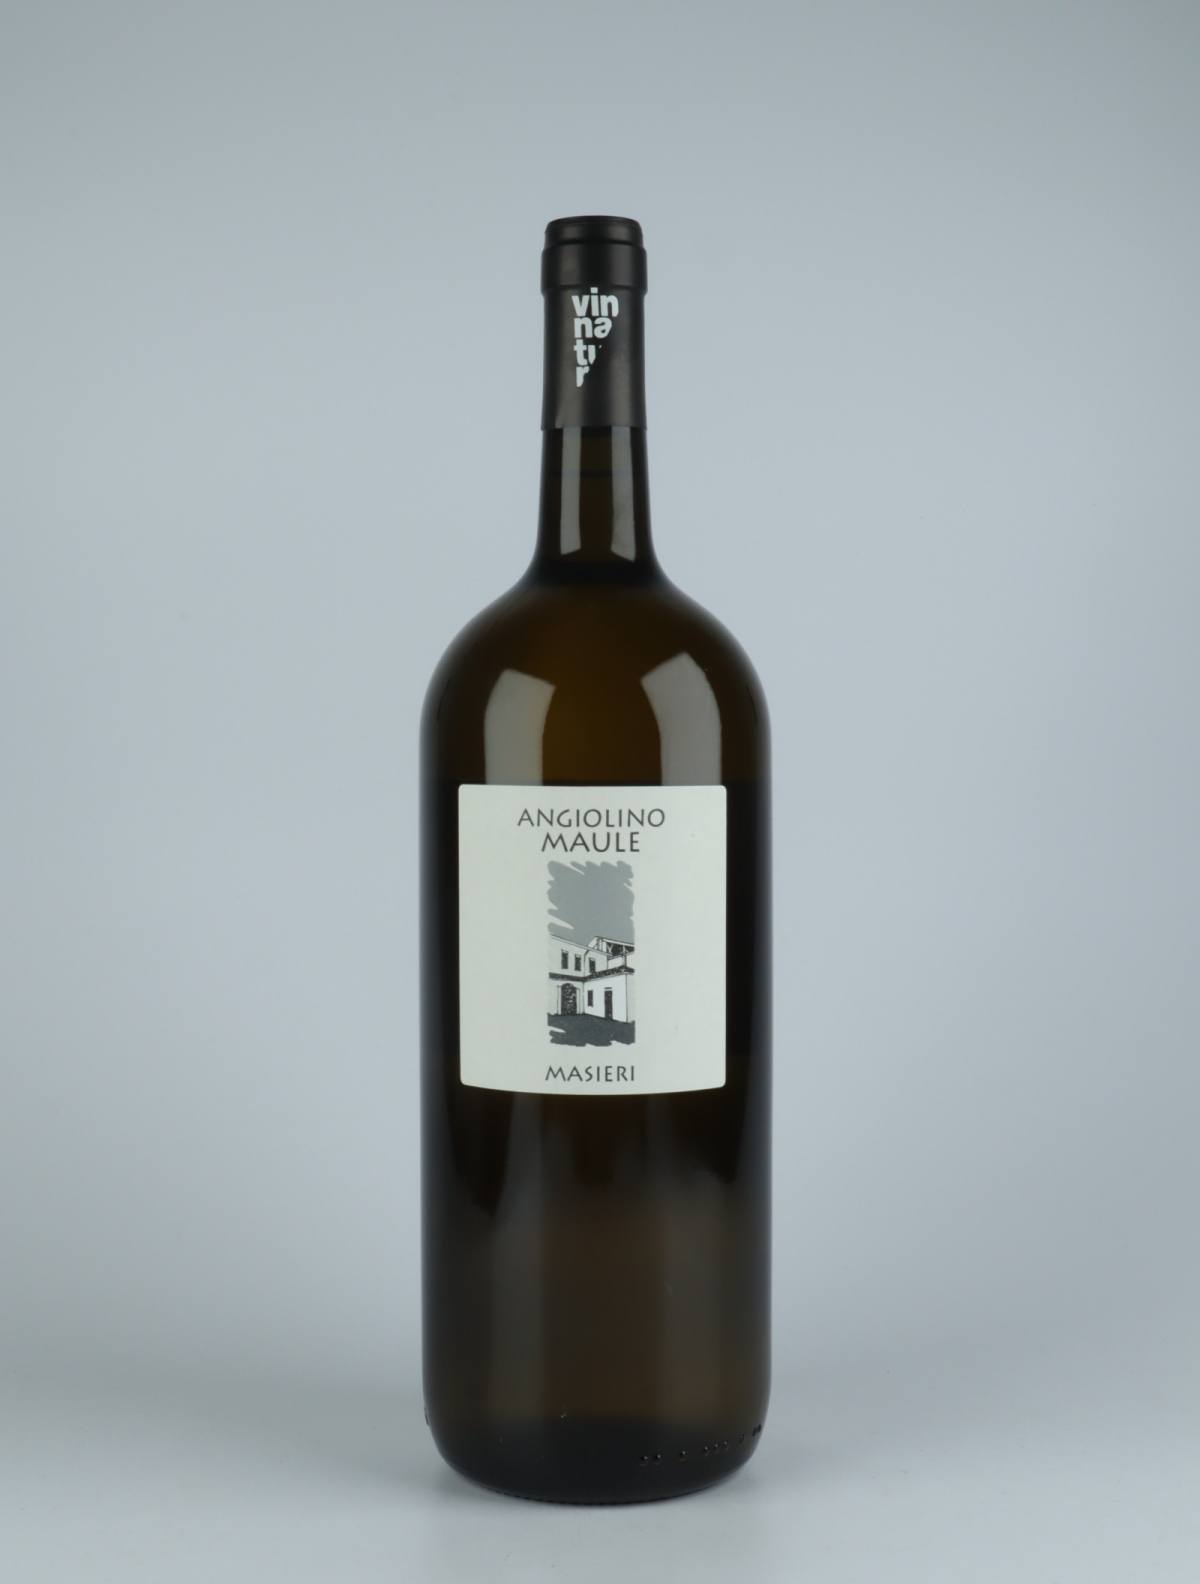 A bottle 2020 Masieri White wine from La Biancara di Angiolino Maule, Veneto in Italy